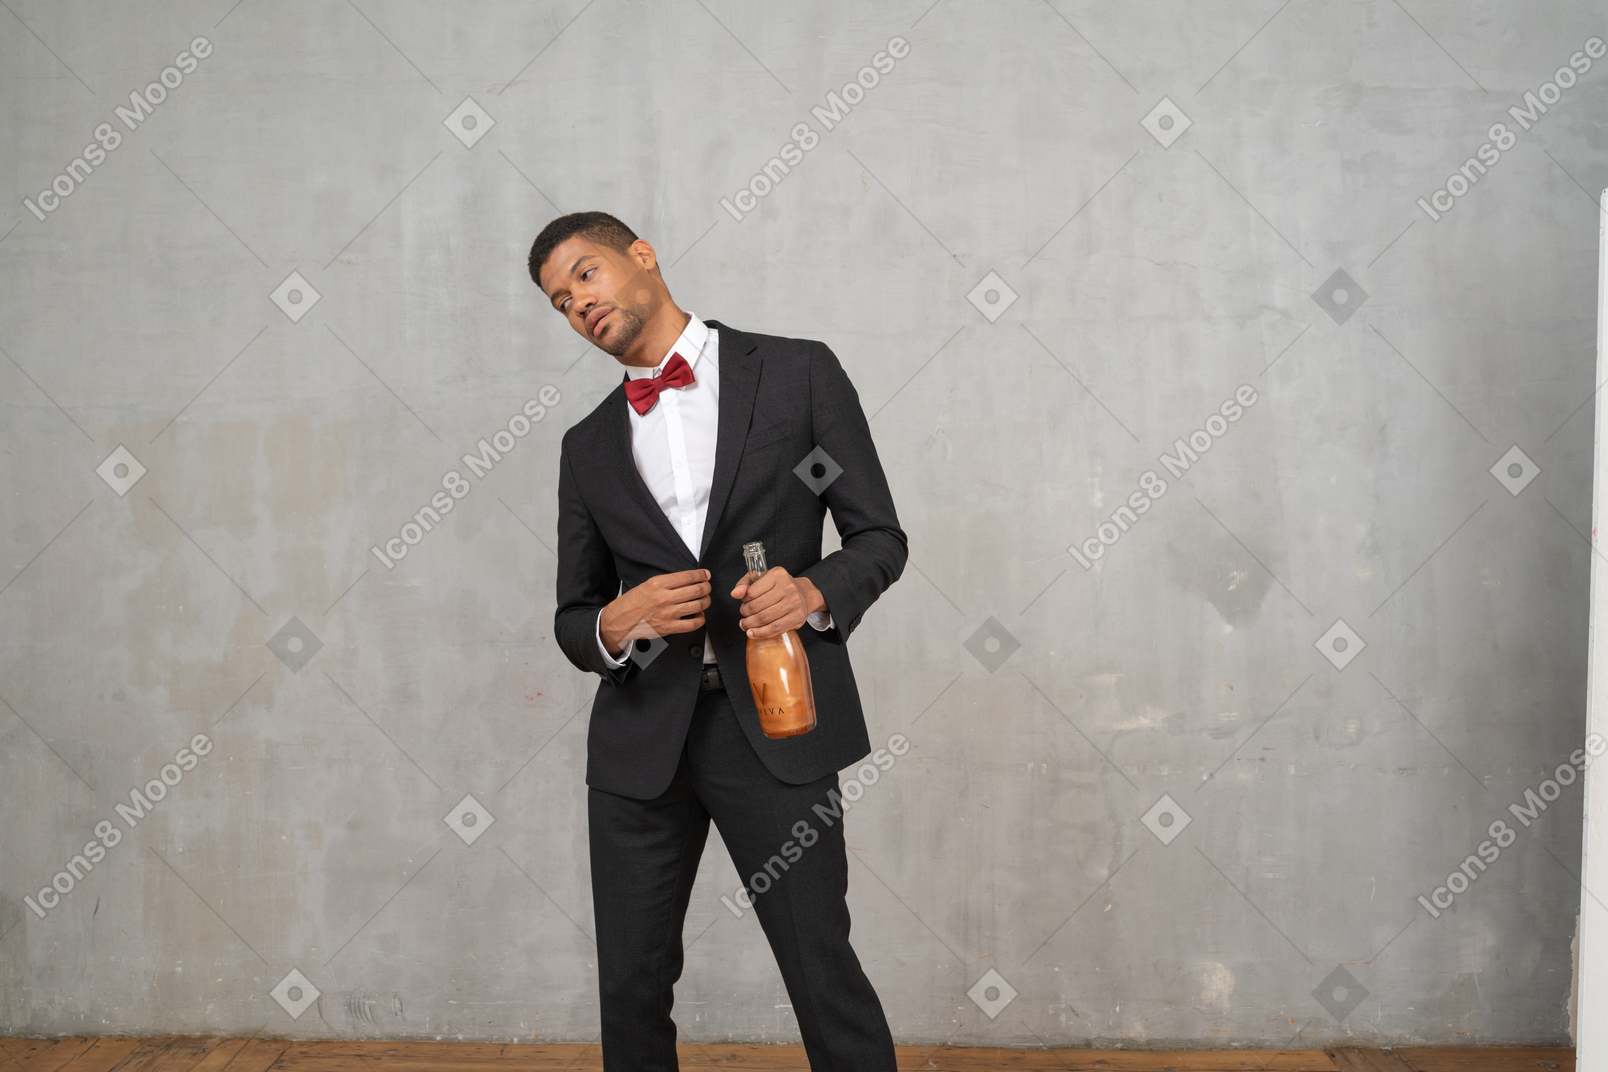 Hombre intoxicado con ropa formal tambaleándose